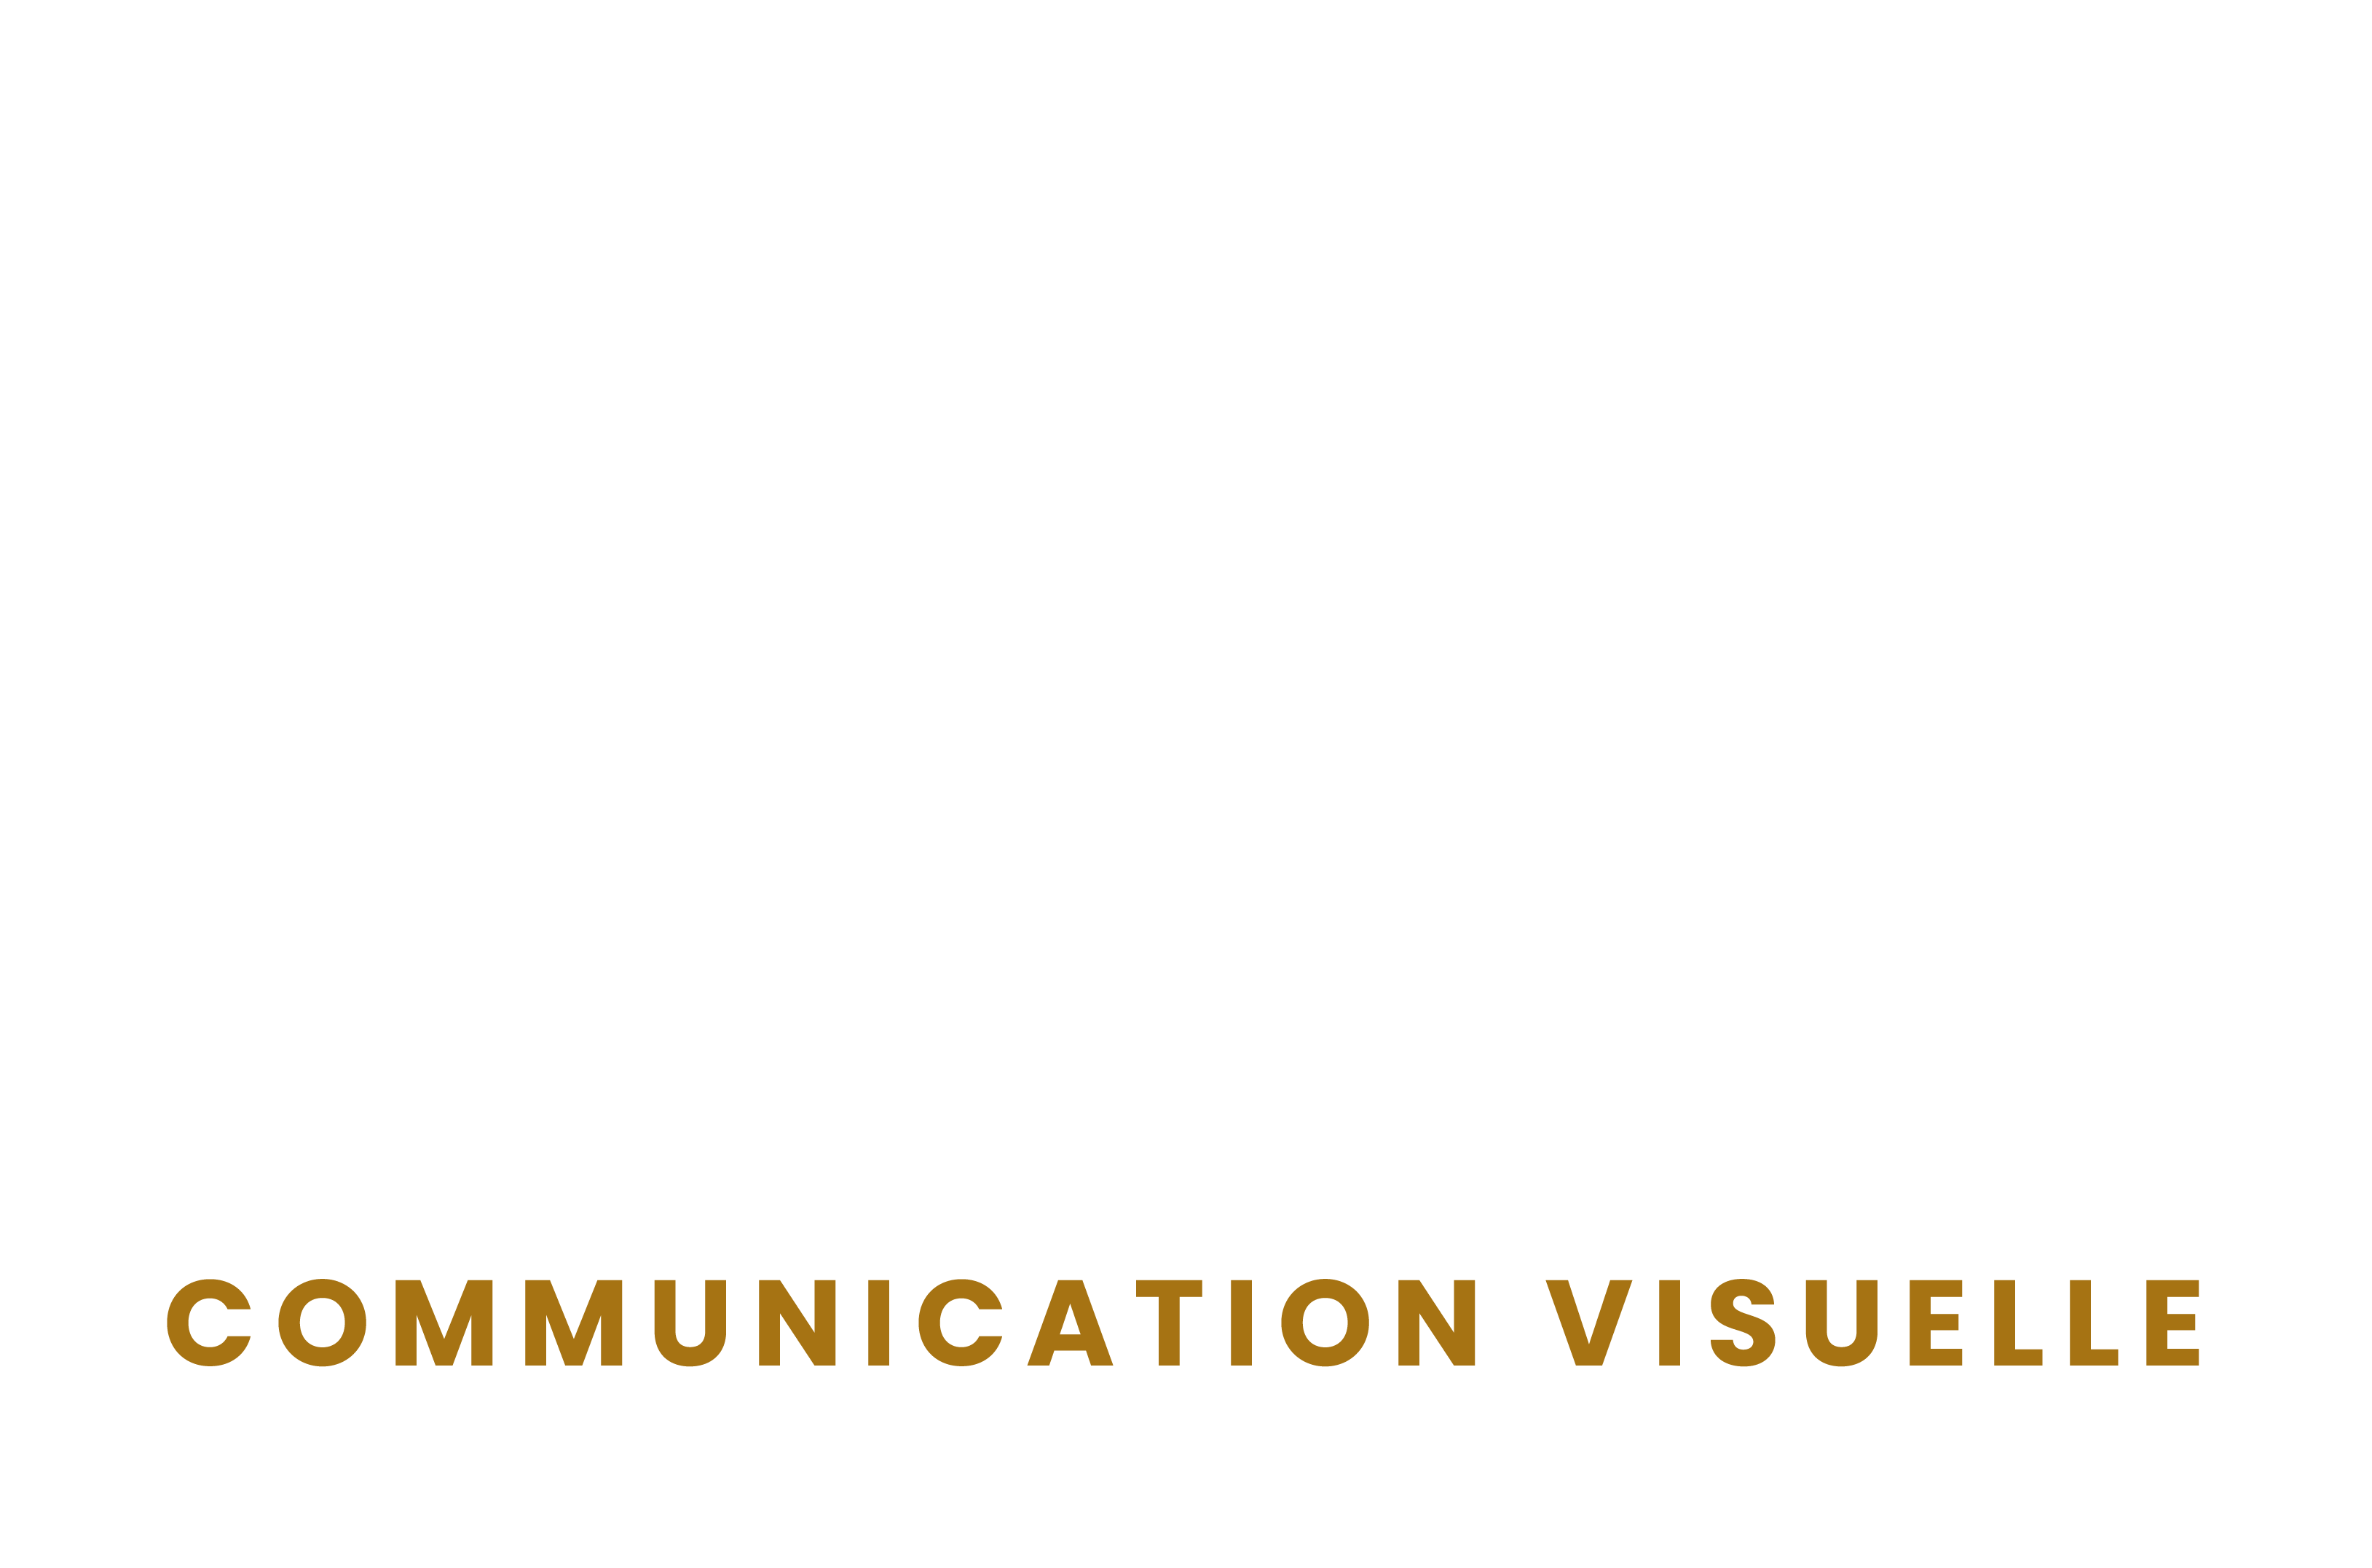 Agence de Communication visuelle – Le Grand Cactus 🌵 Tournus